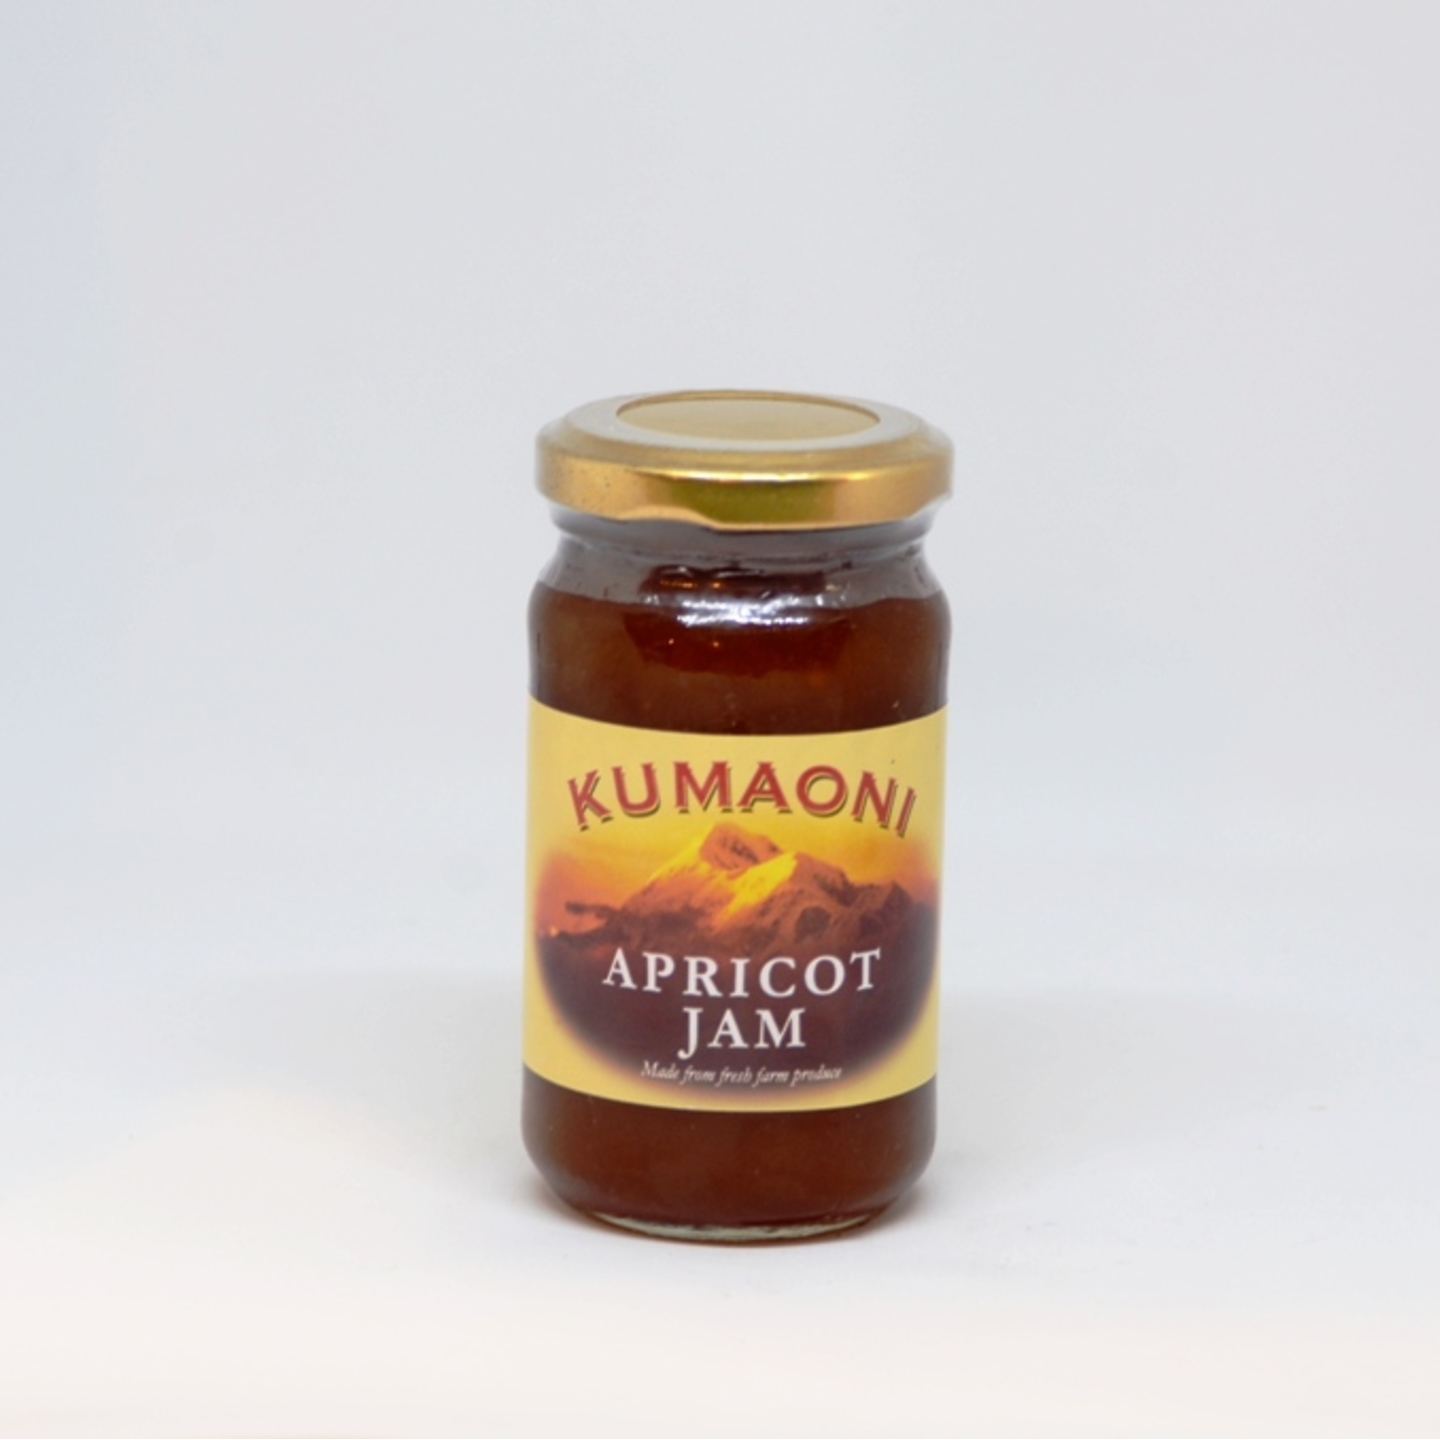 Kumaoni Apricot Jam 250 gm